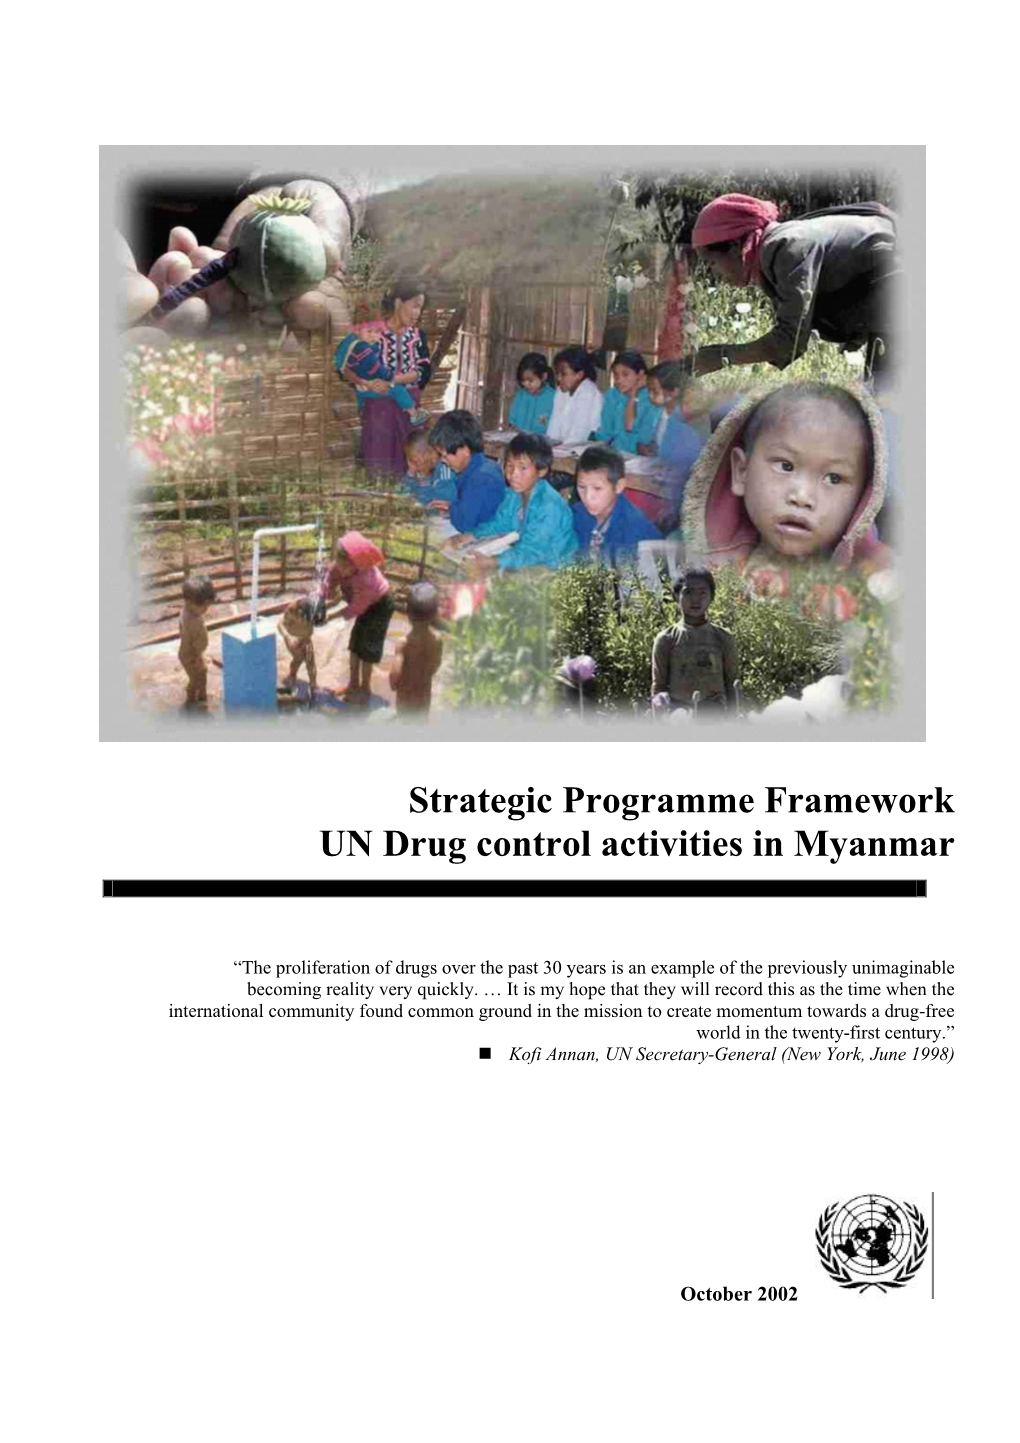 Strategic Programme Framework UN Drug Control Activities in Myanmar